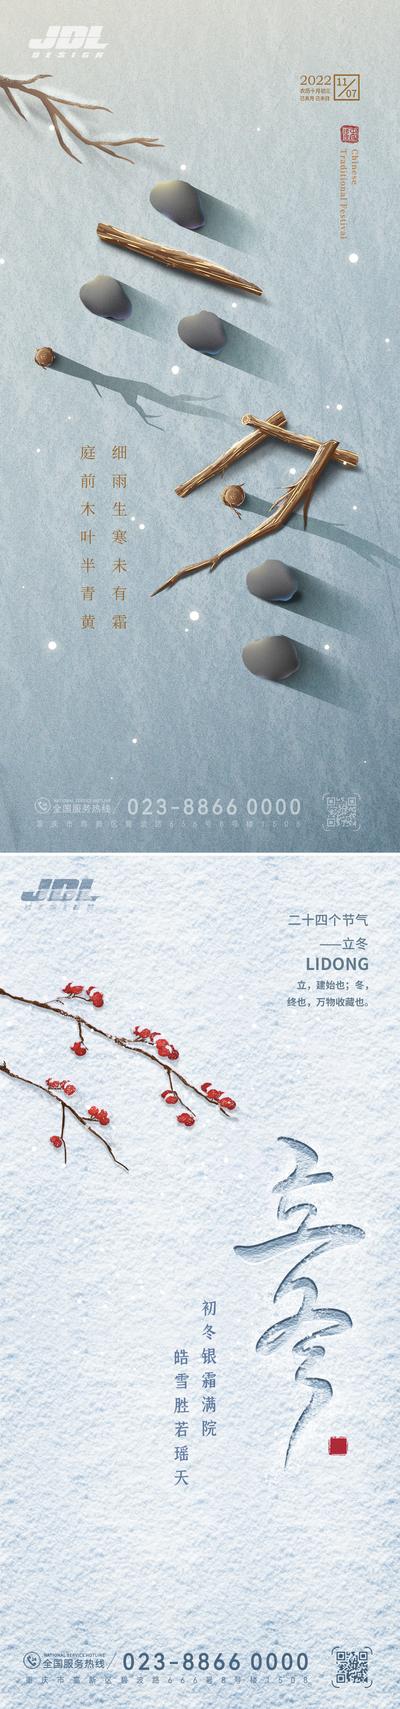 南门网 海报 二十四节气 立冬 雪地 下雪 创意 石头 系列